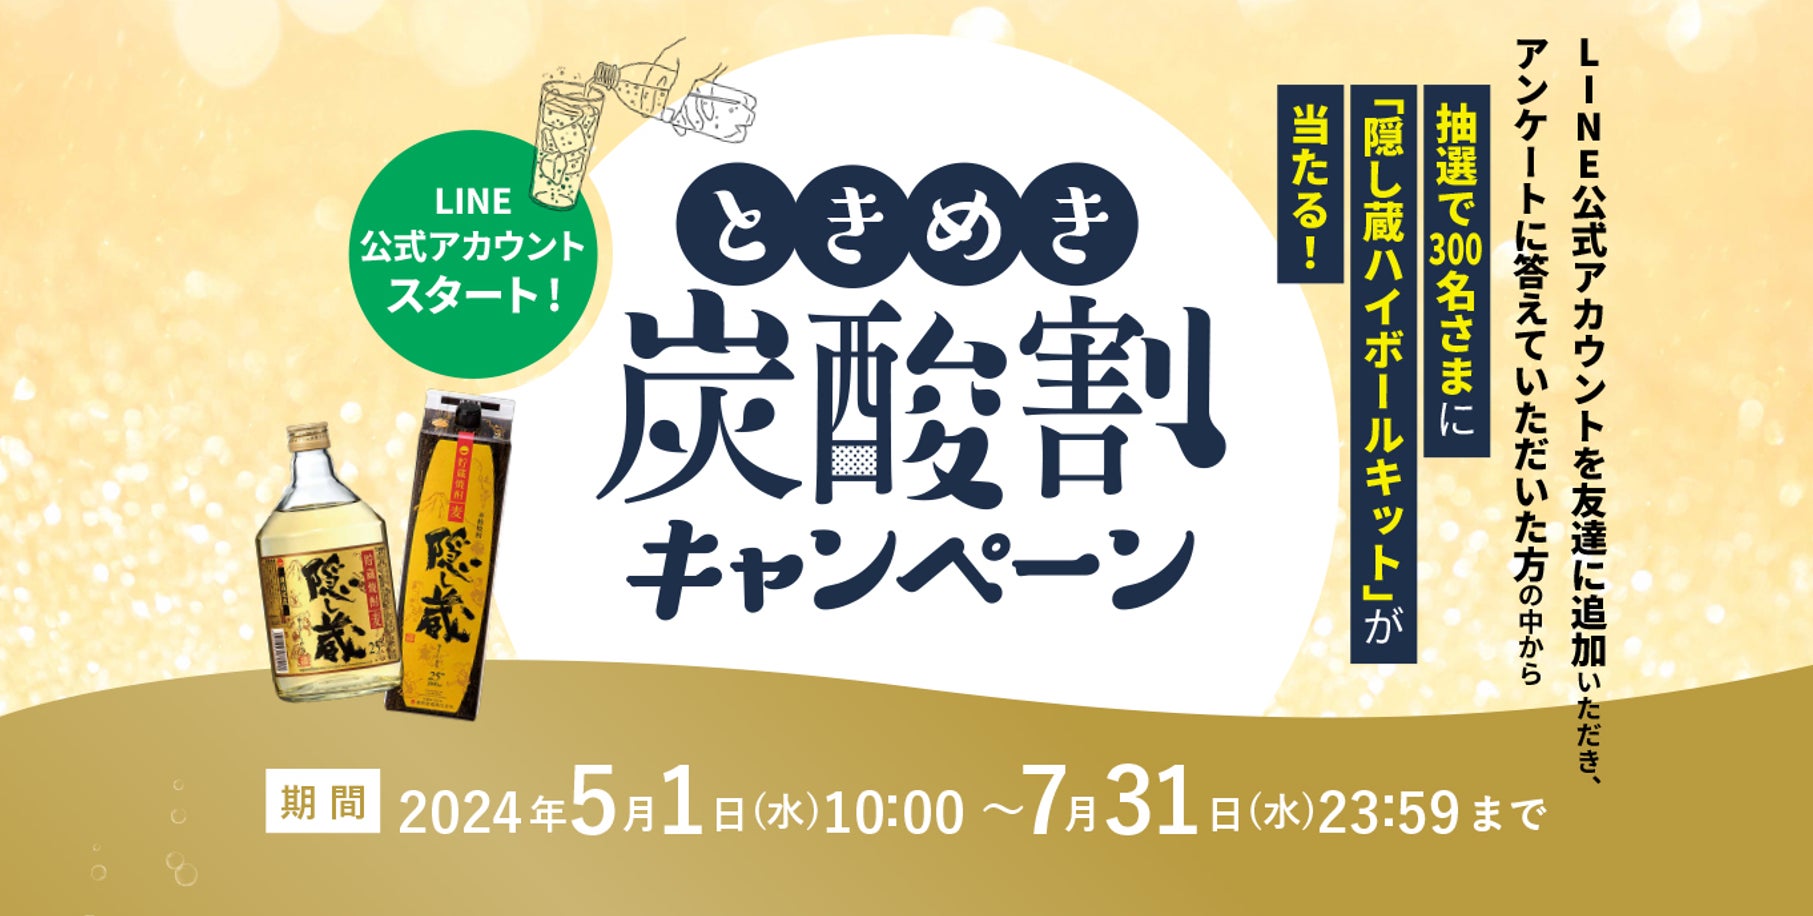 浜田酒造LINE公式アカウントがスタート！本格麦焼酎「隠し蔵」 ときめき炭酸割キャンペーンを実施。